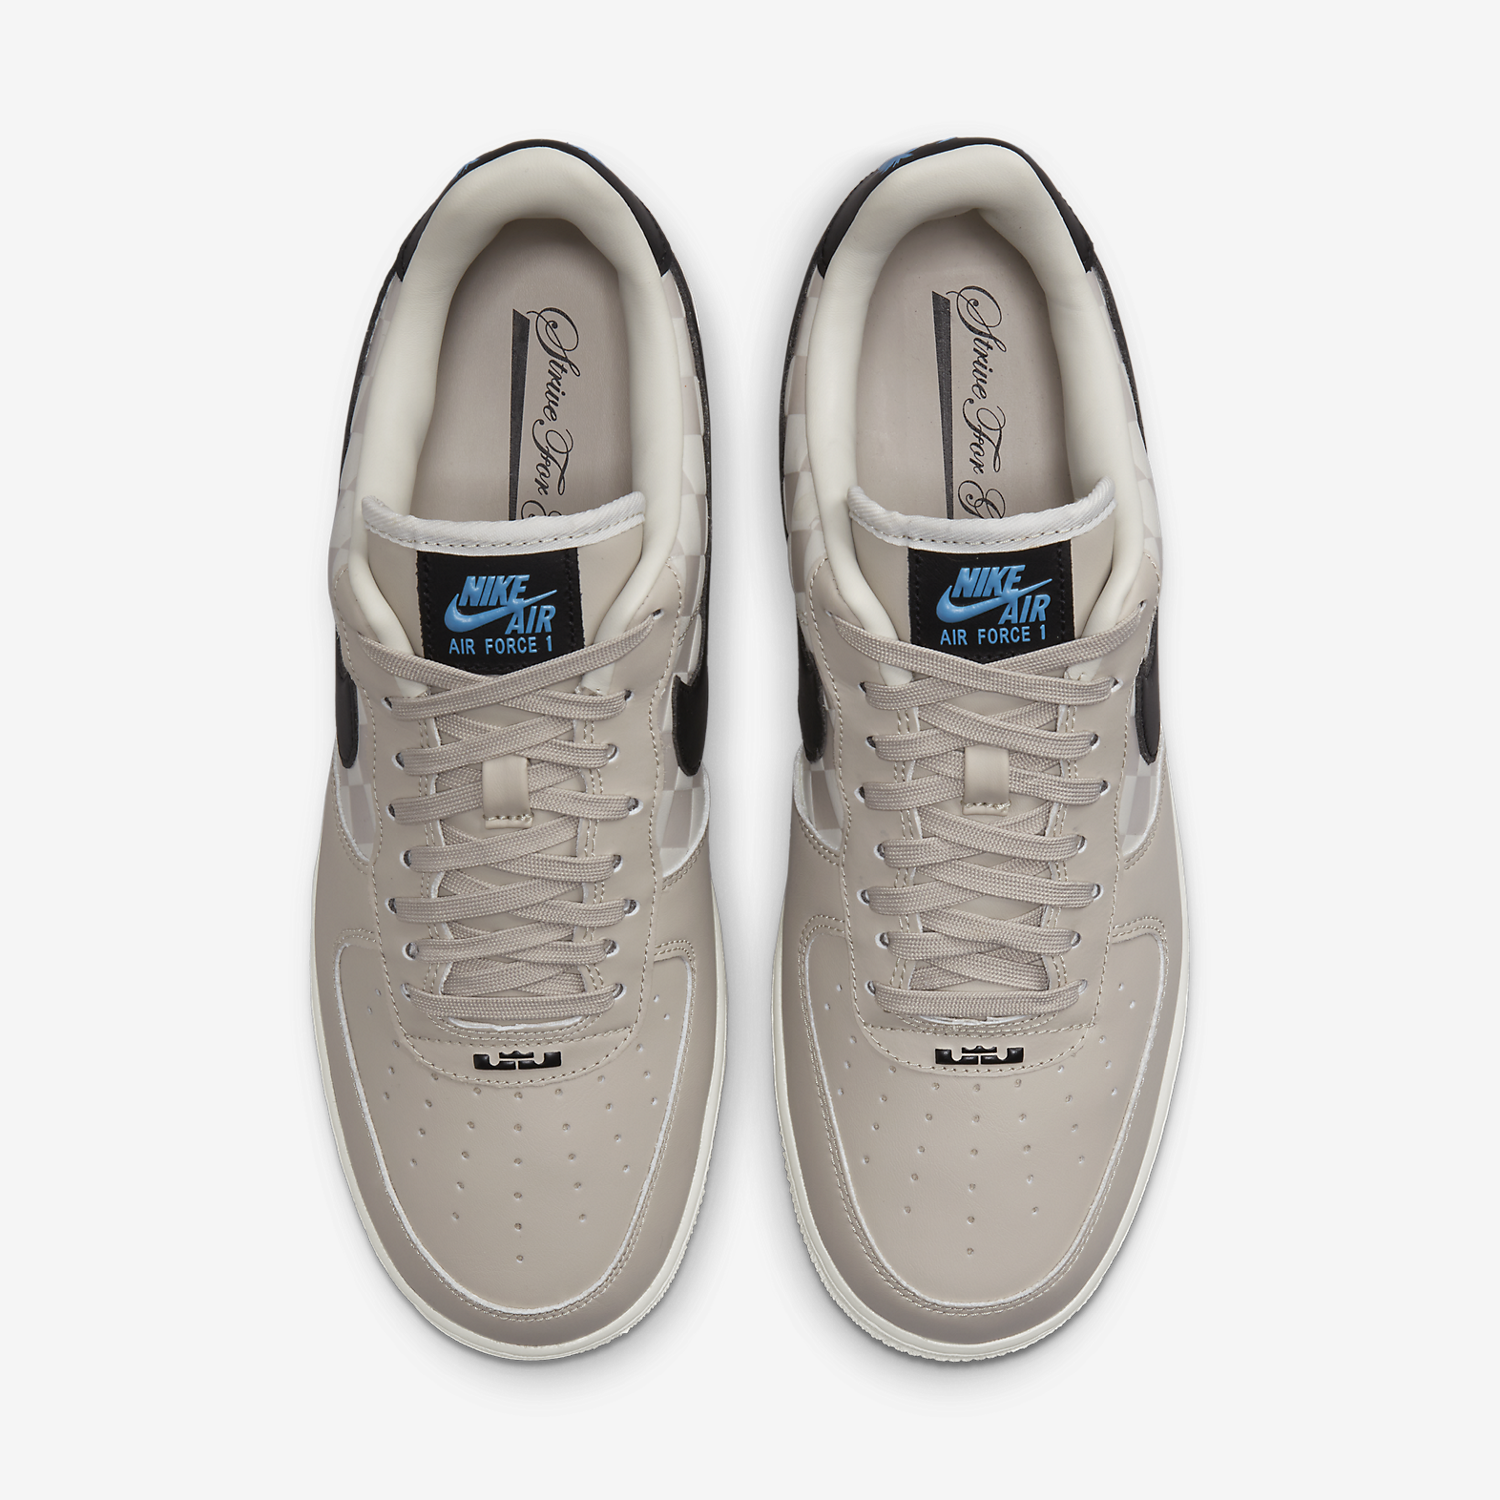 Sneaker Drop — Nike Air Force 1 'LBJ' مضخة تنظيف الاسنان